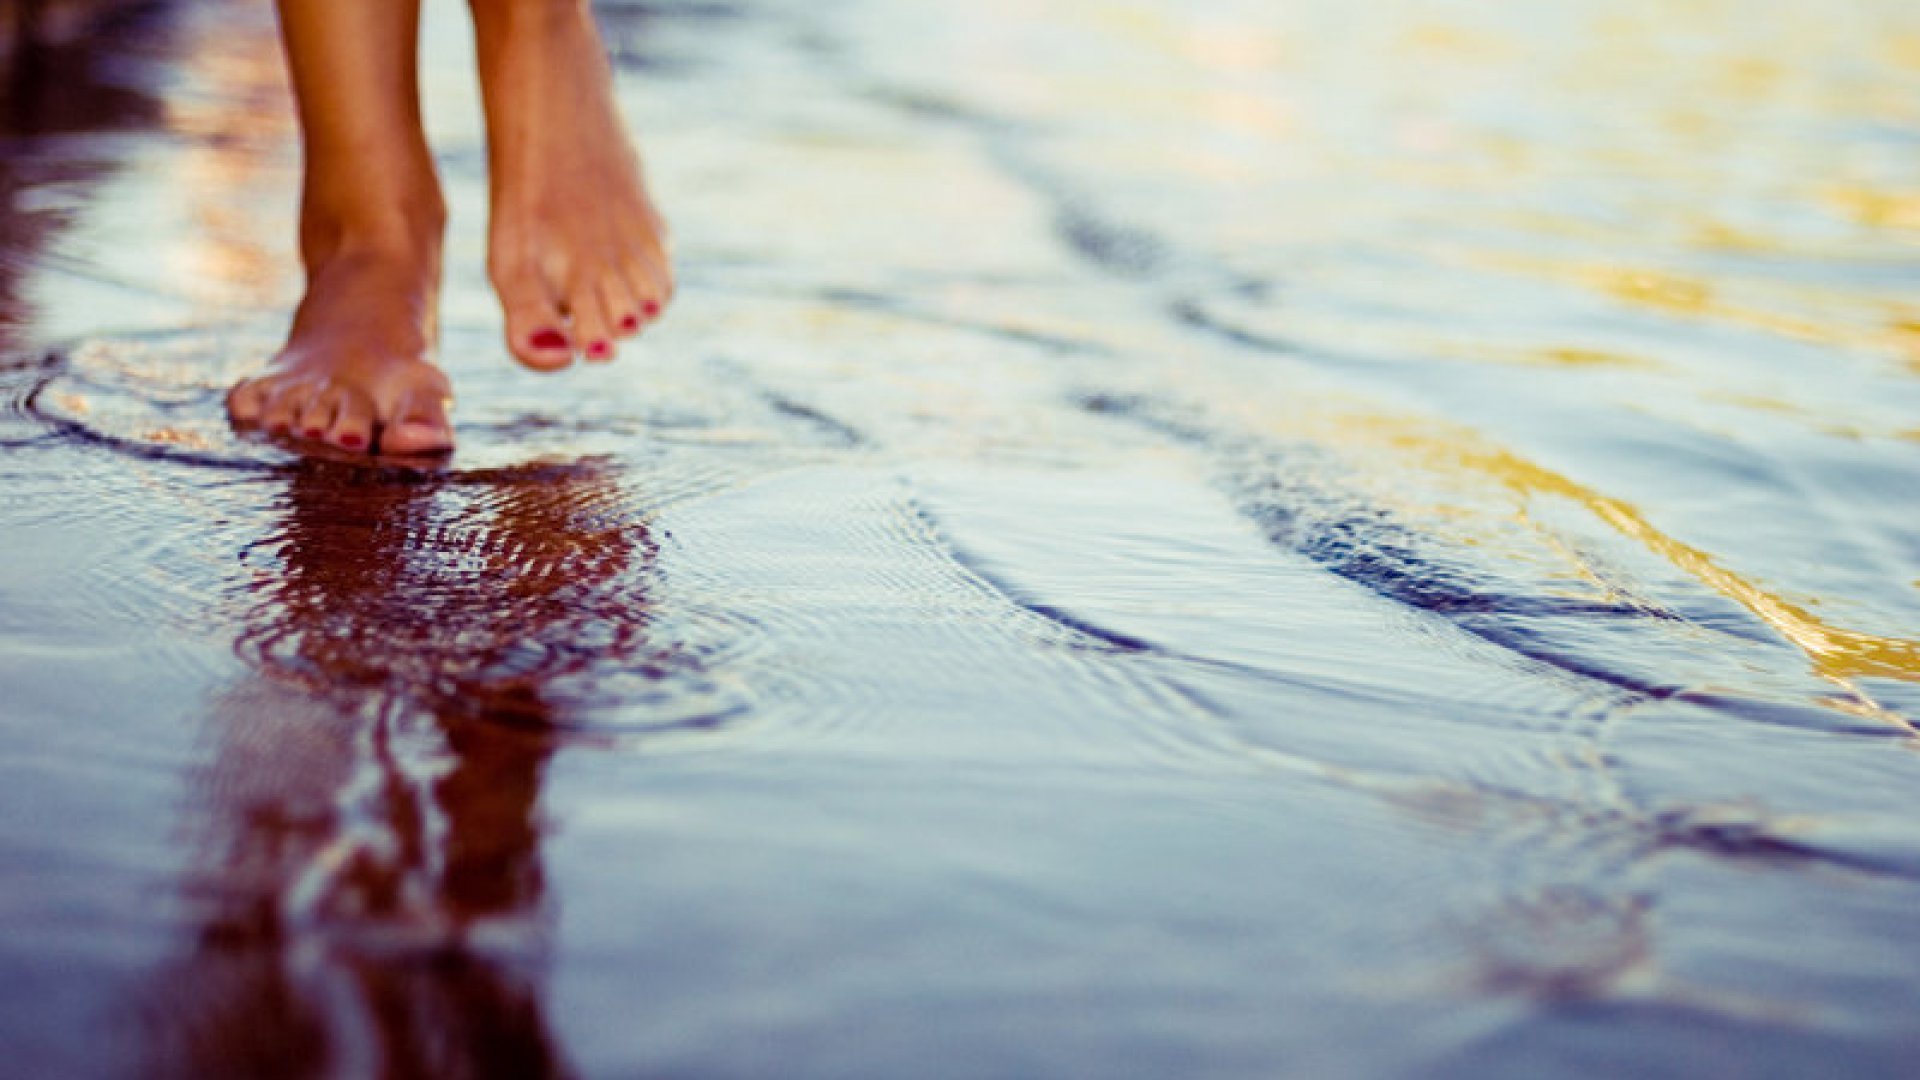 Вижу ее шаги. Ноги по воде. Босые ноги в воде. Ноги в луже. Маленькими шагами к счастью.